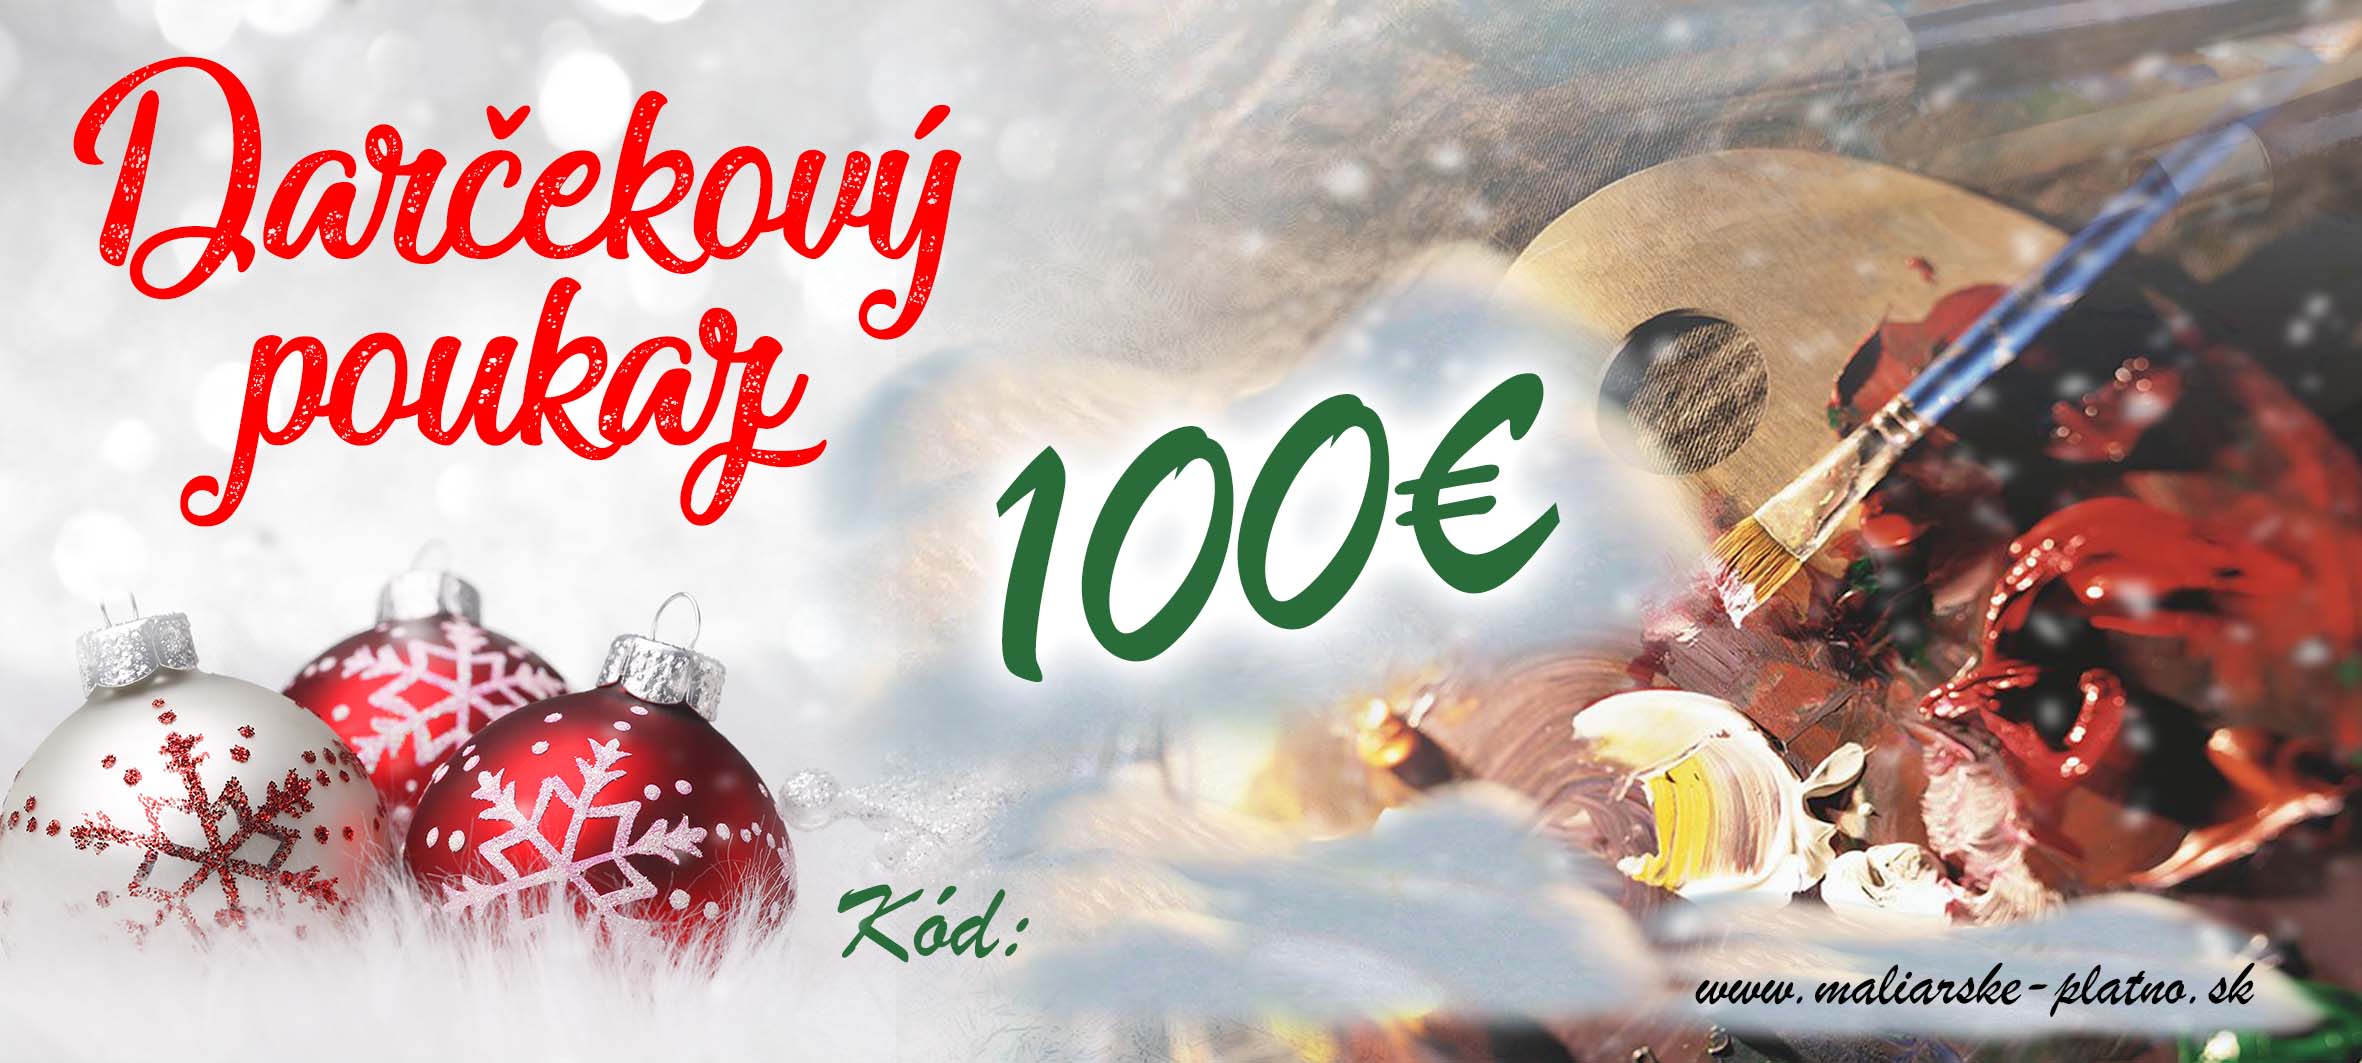 Vianočný darčekový poukaz 2 - 100 €